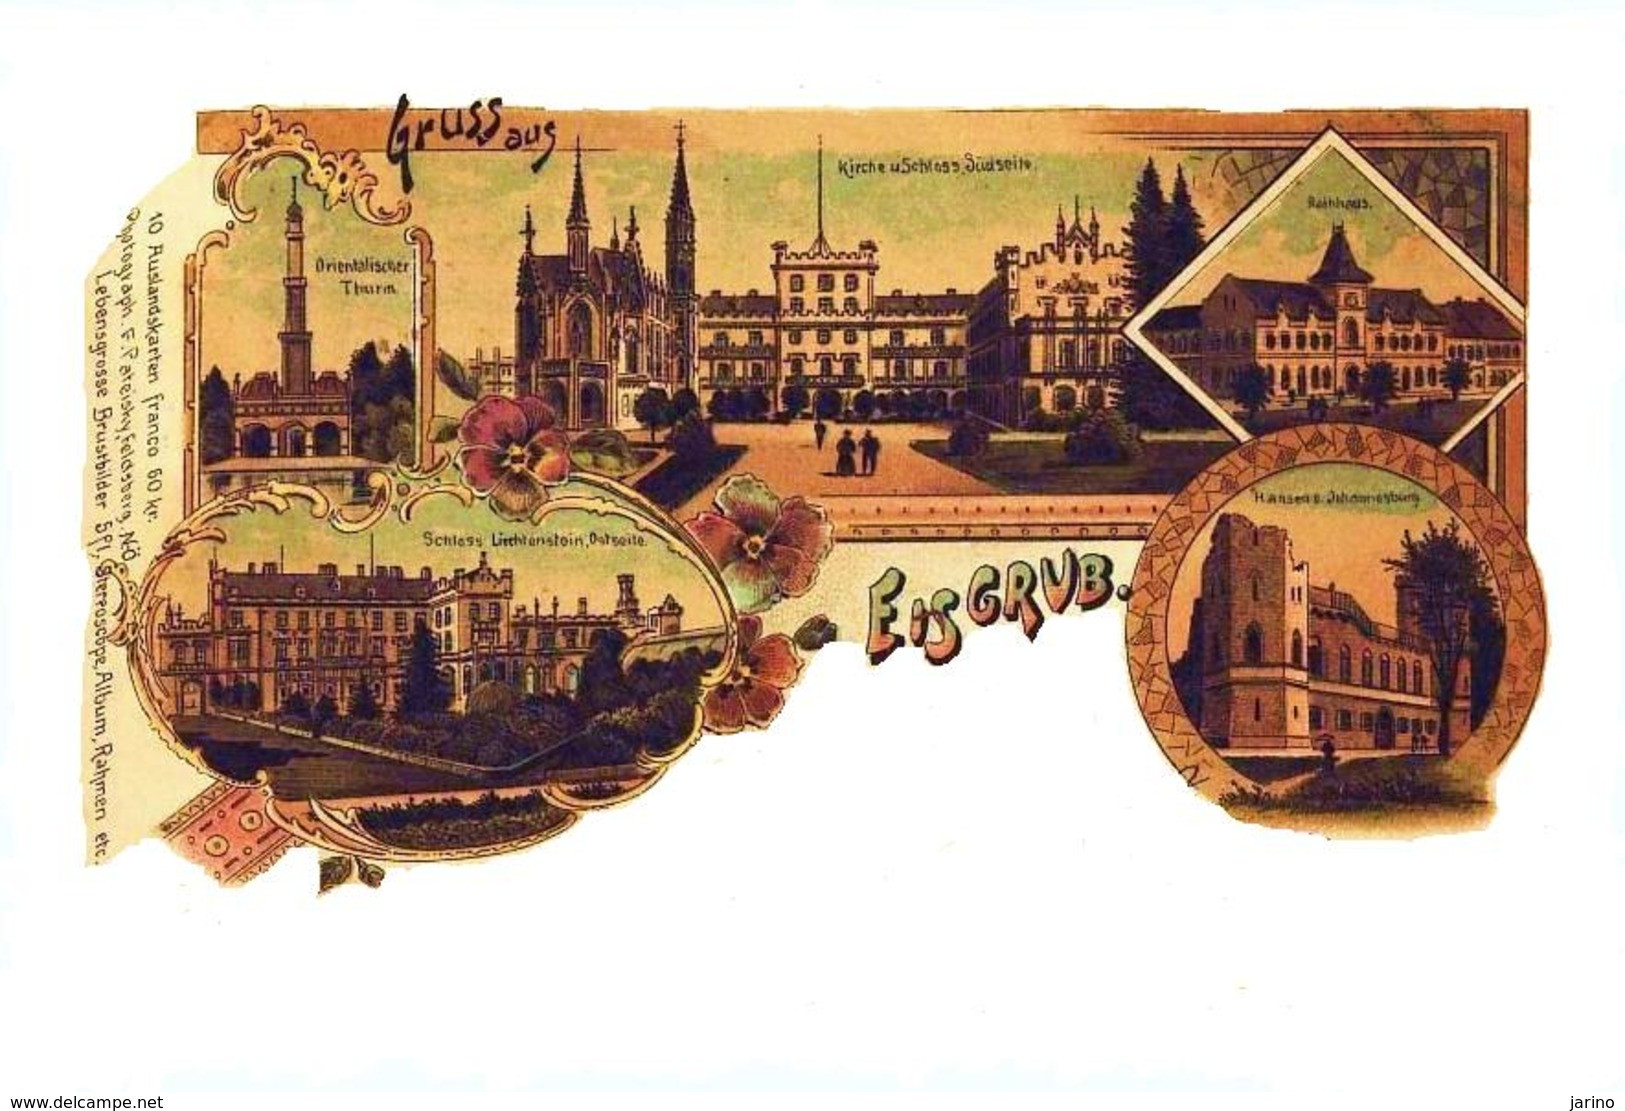 Lednice - Eisgrub 1899, Kreis - Okres: Breclav, Tschechische Republik, Litho, Reproduction - Czech Republic